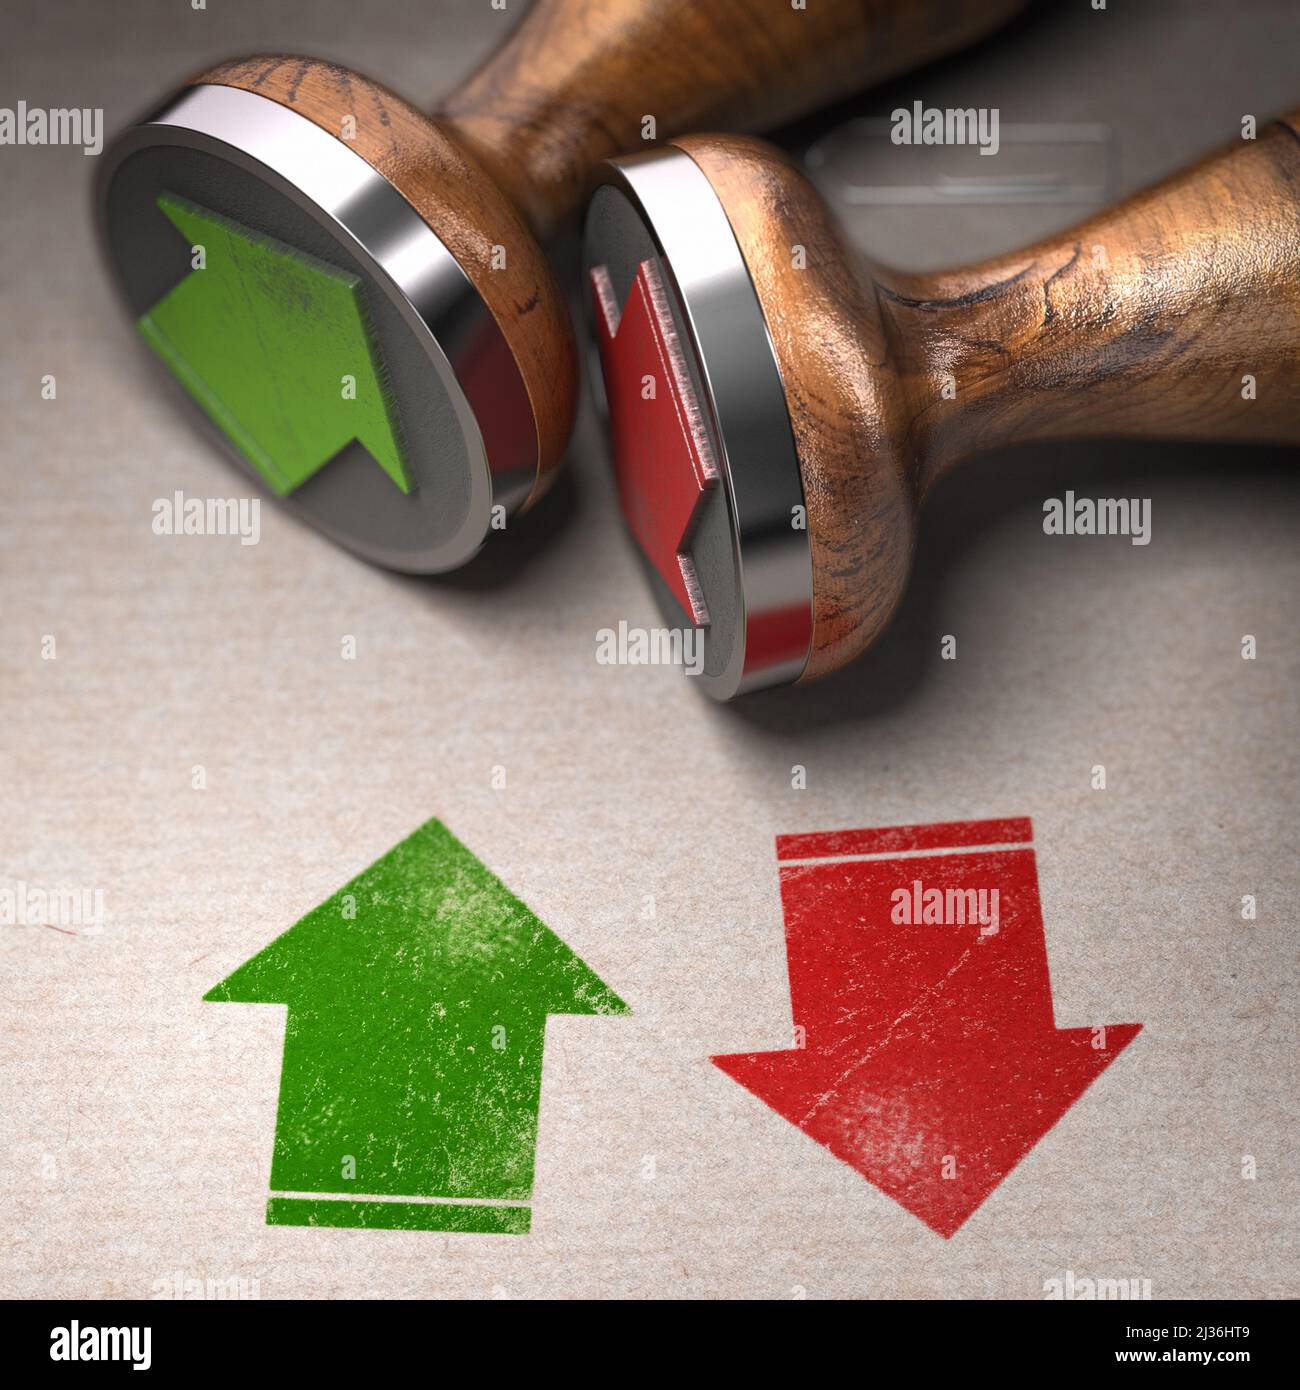 Dos flechas verdes y rojas que muestran las direcciones hacia arriba y hacia abajo impresas en papel kraft con sello de goma. Ilustración 3D. Foto de stock